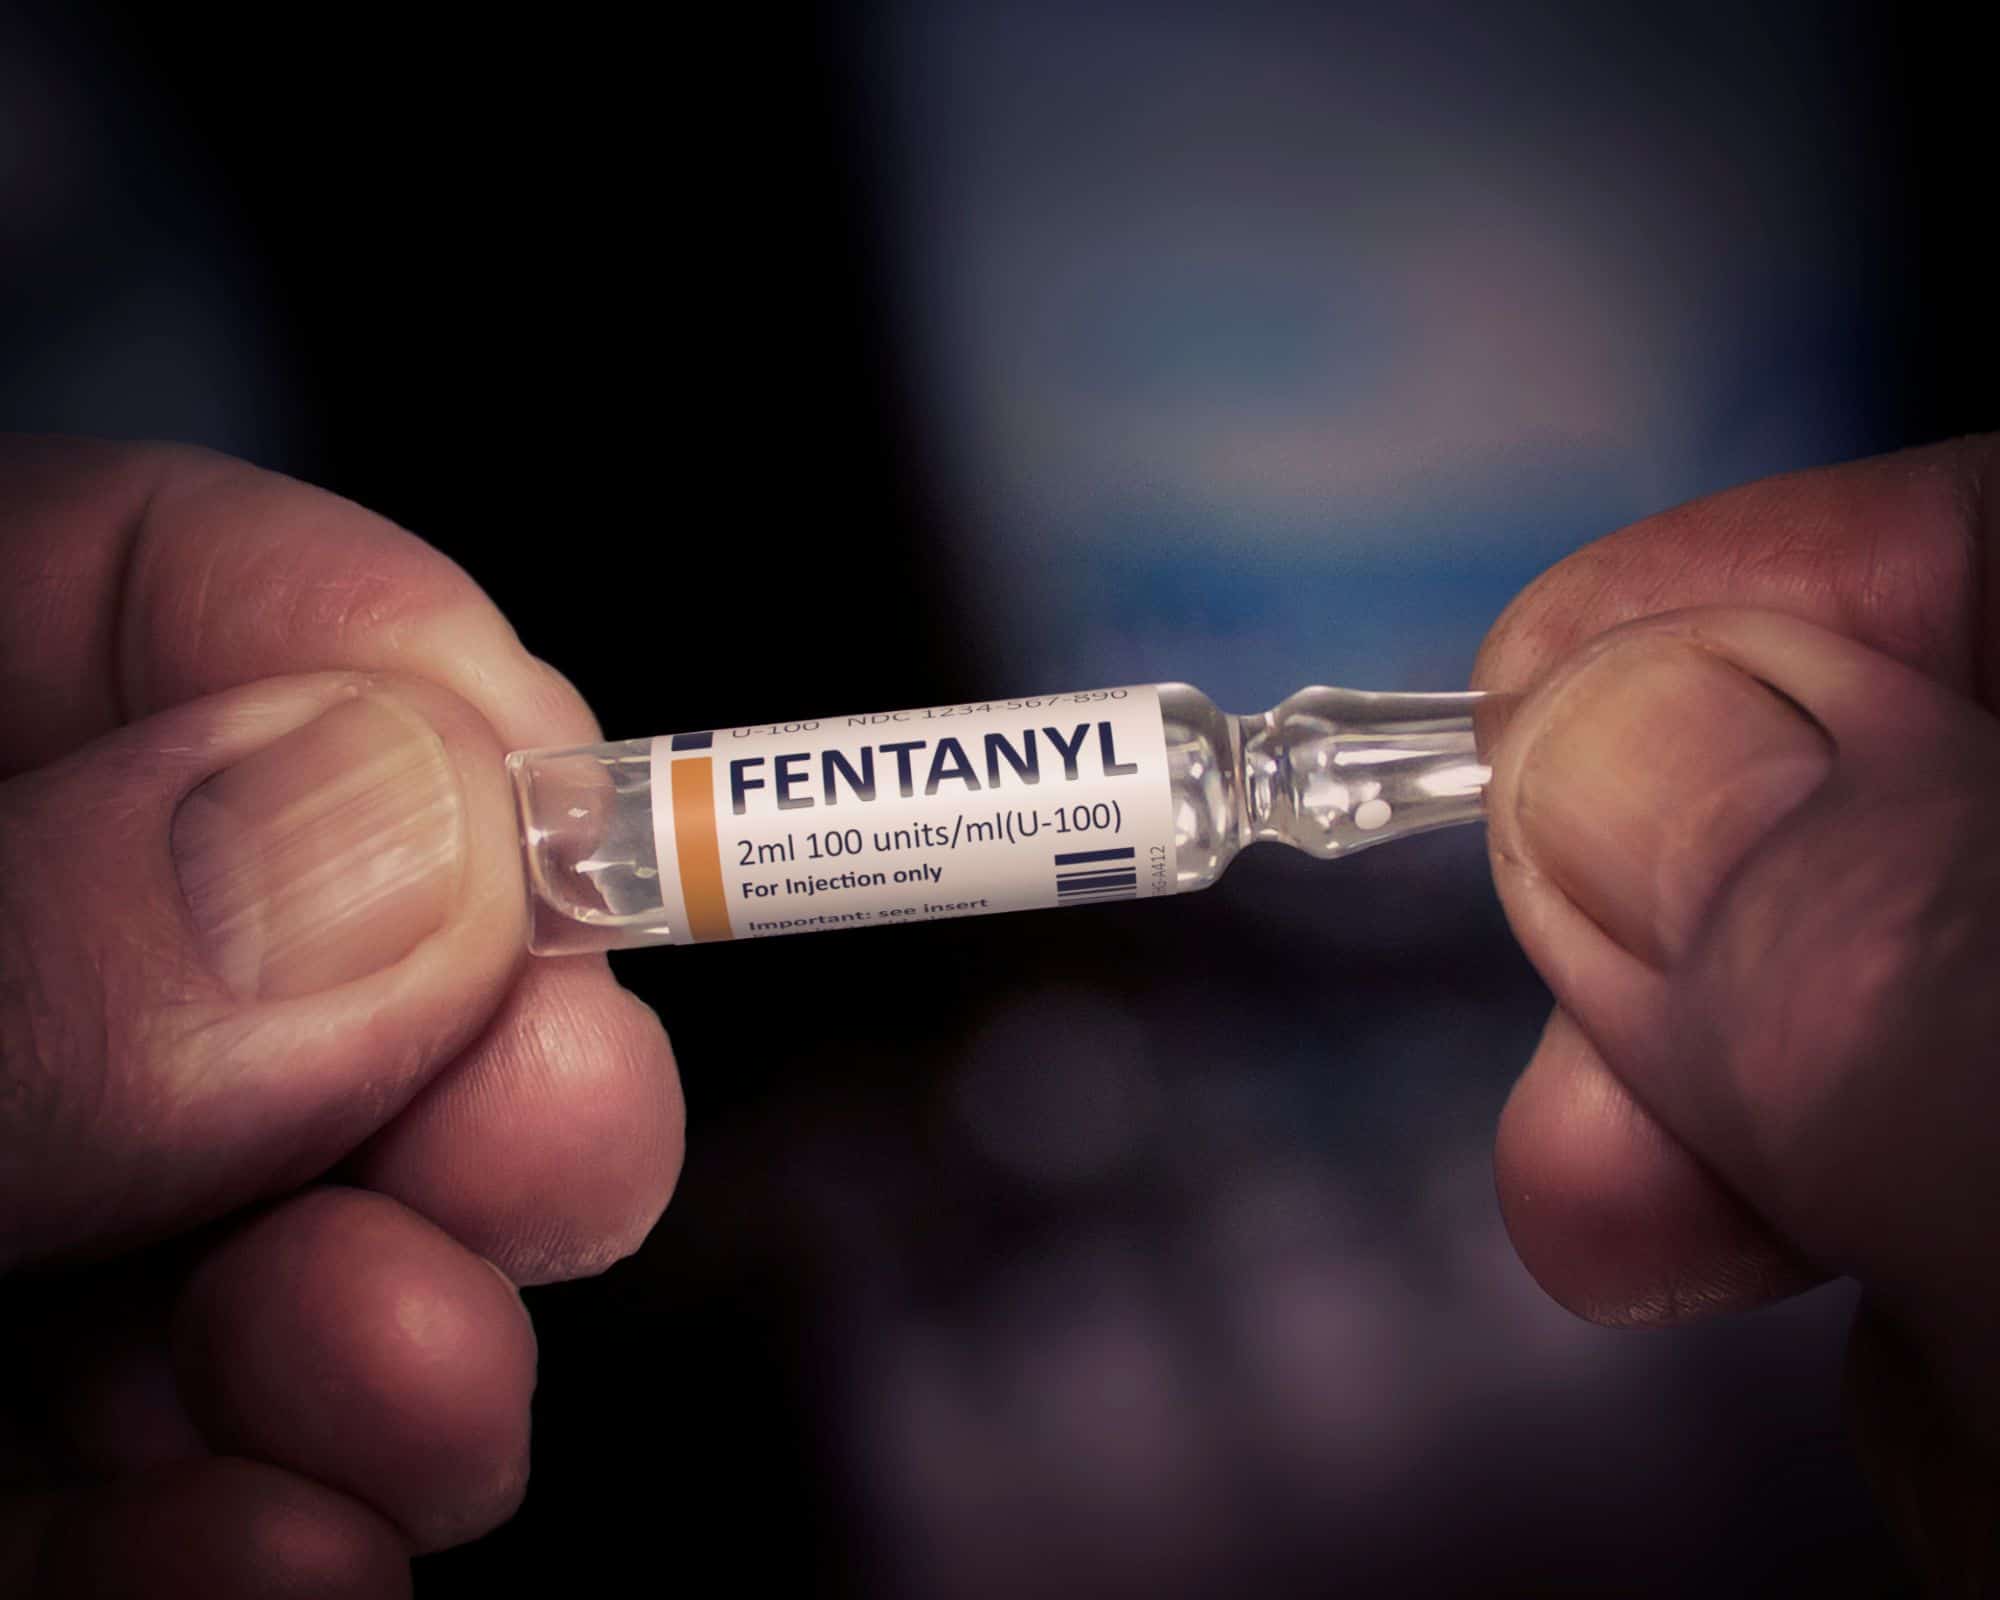 is fentanyl as dangerous as everyone says it is